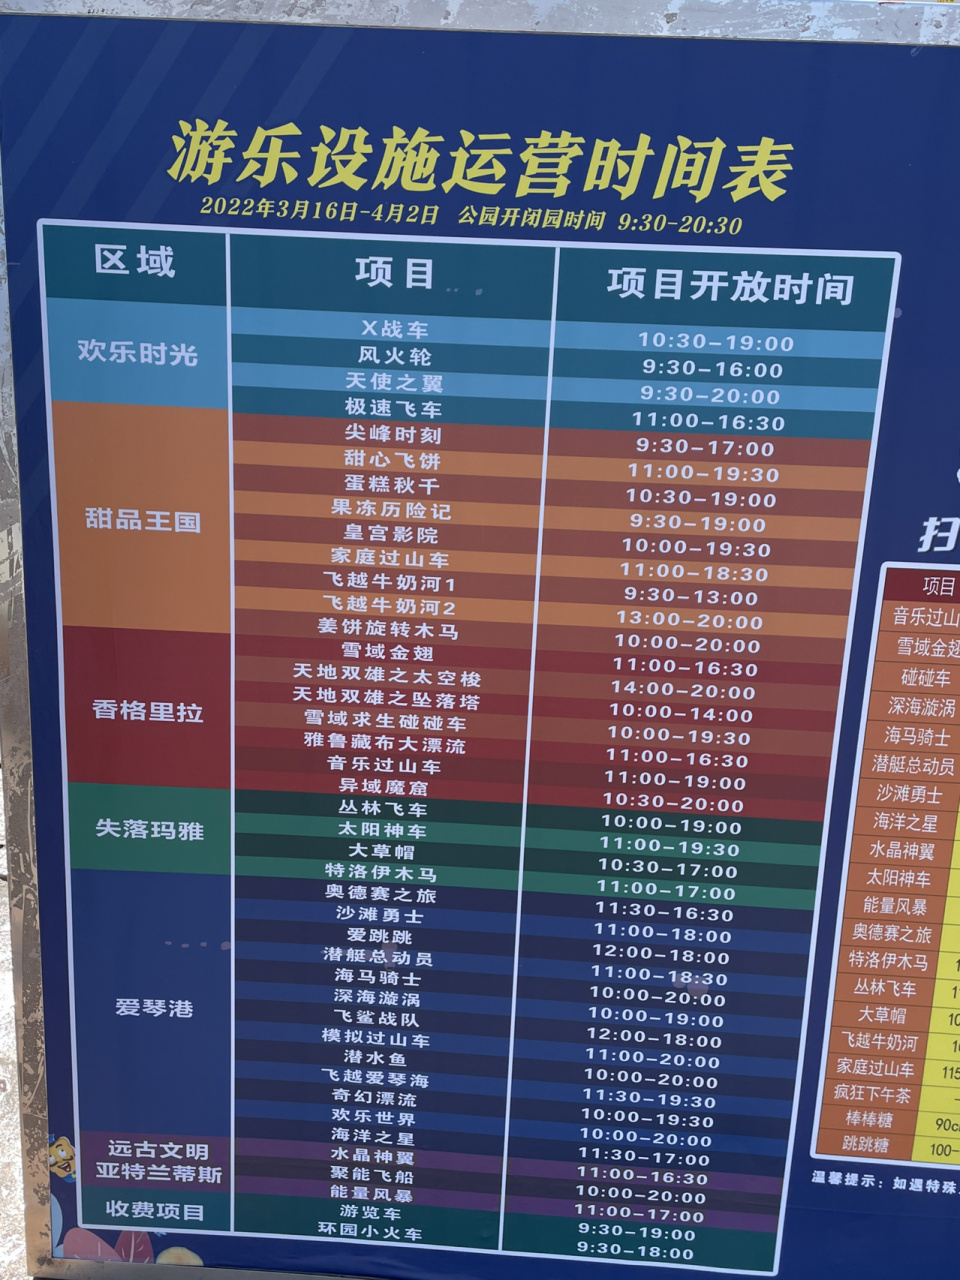 北京欢乐谷游乐设施运营时间表